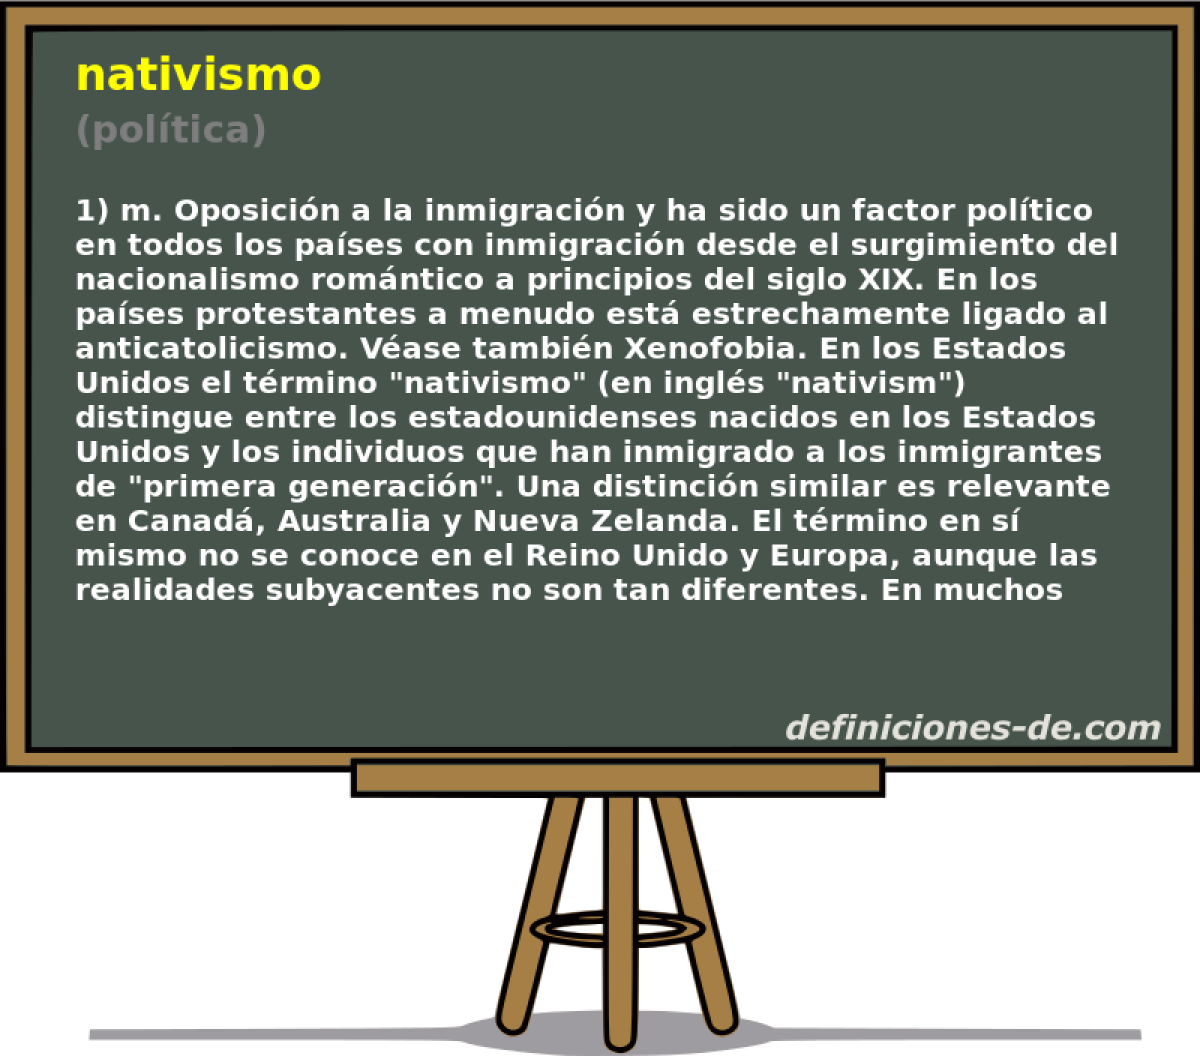 nativismo (poltica)